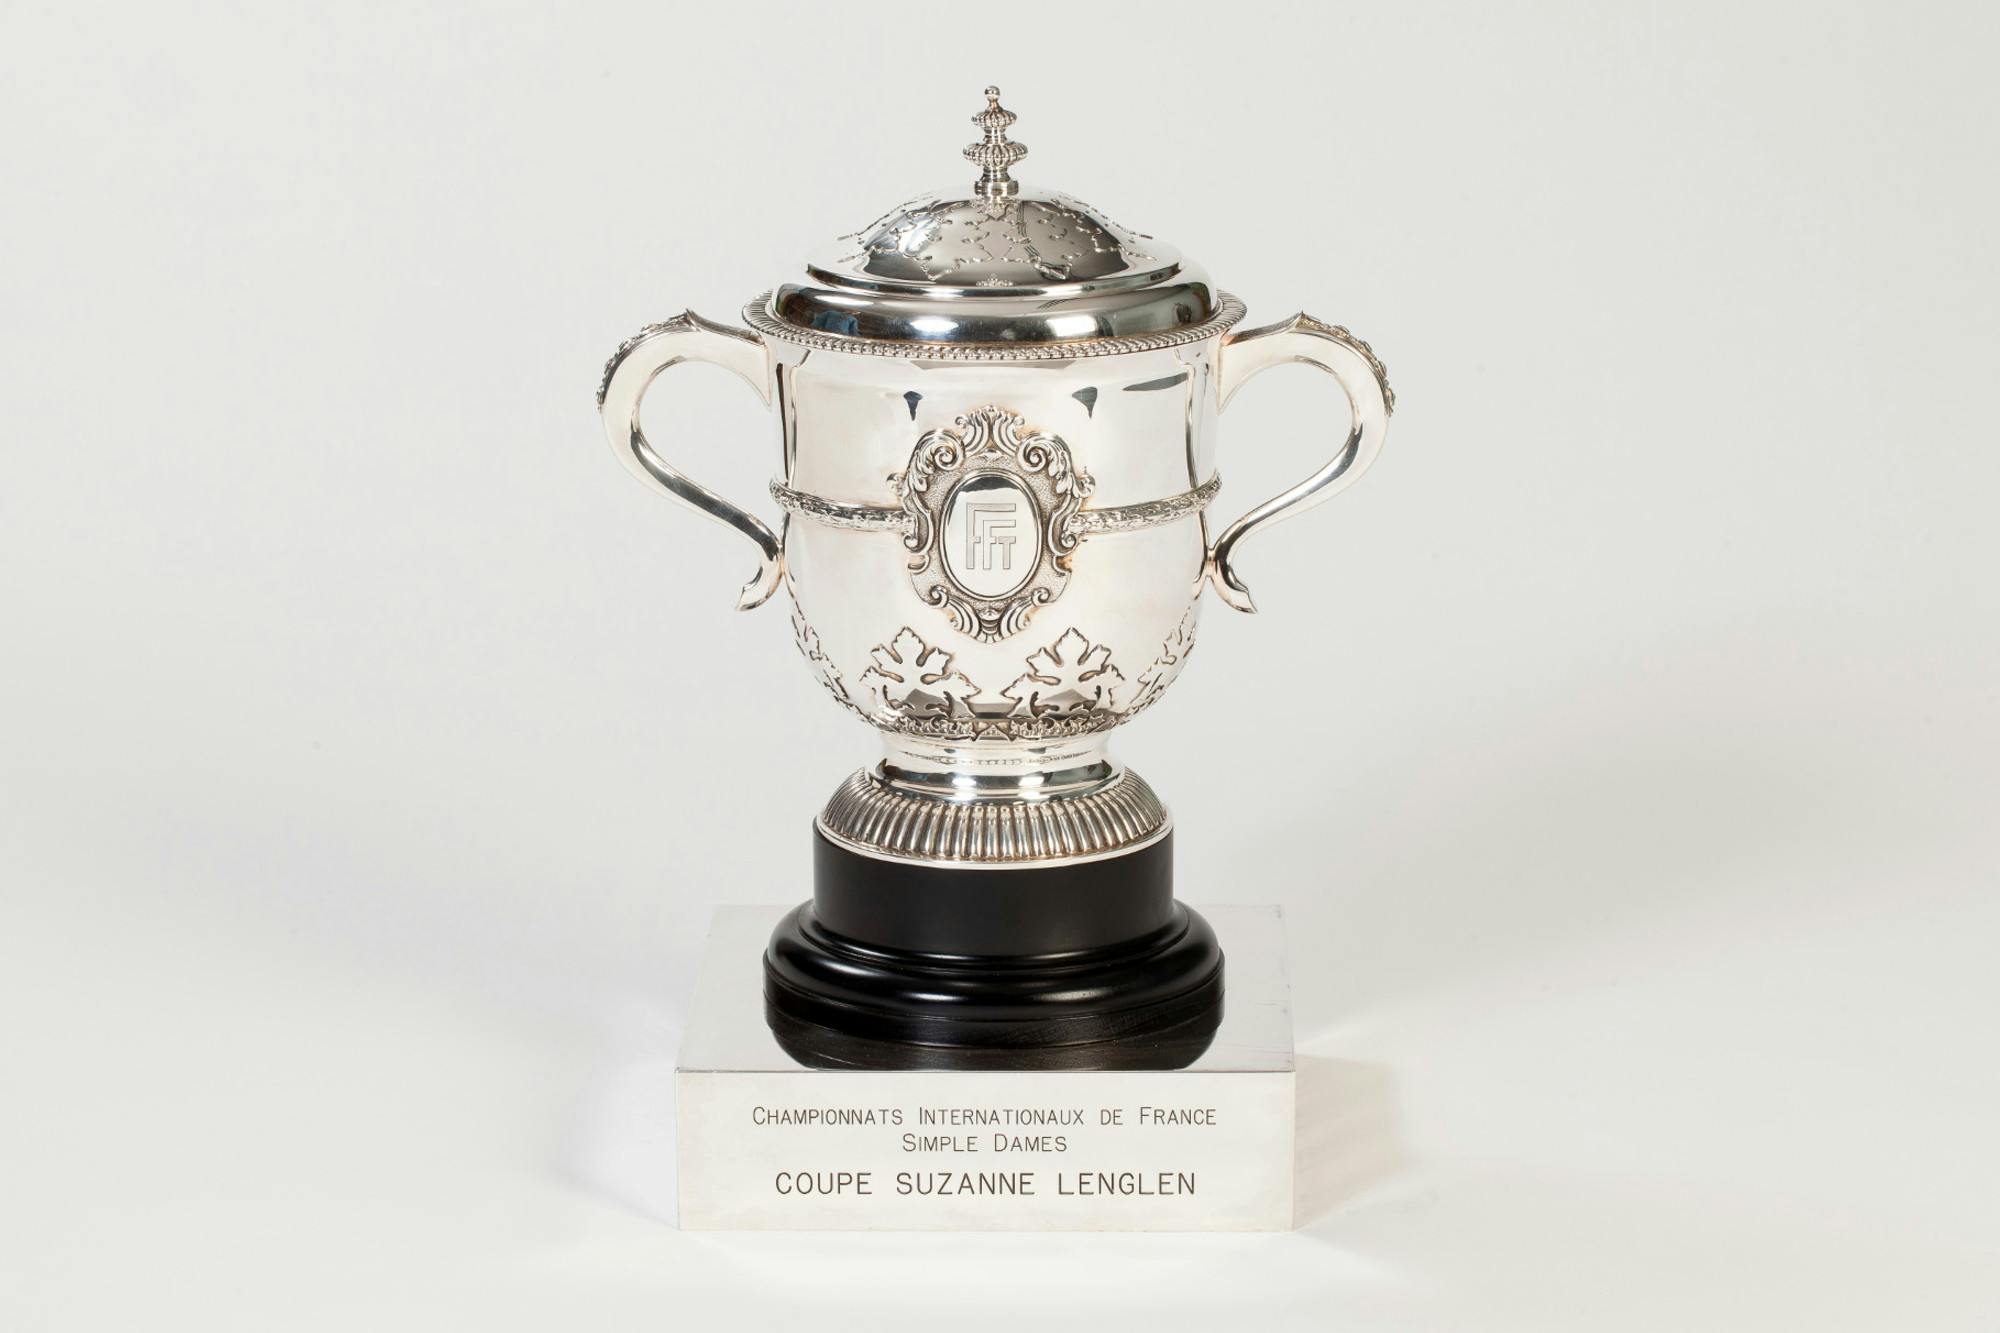 coupe Suzanne-Lenglen simple dames trophée Roland-Garros / Suzanne-Lenglen's cup women's singles Roland-Garros trophy.